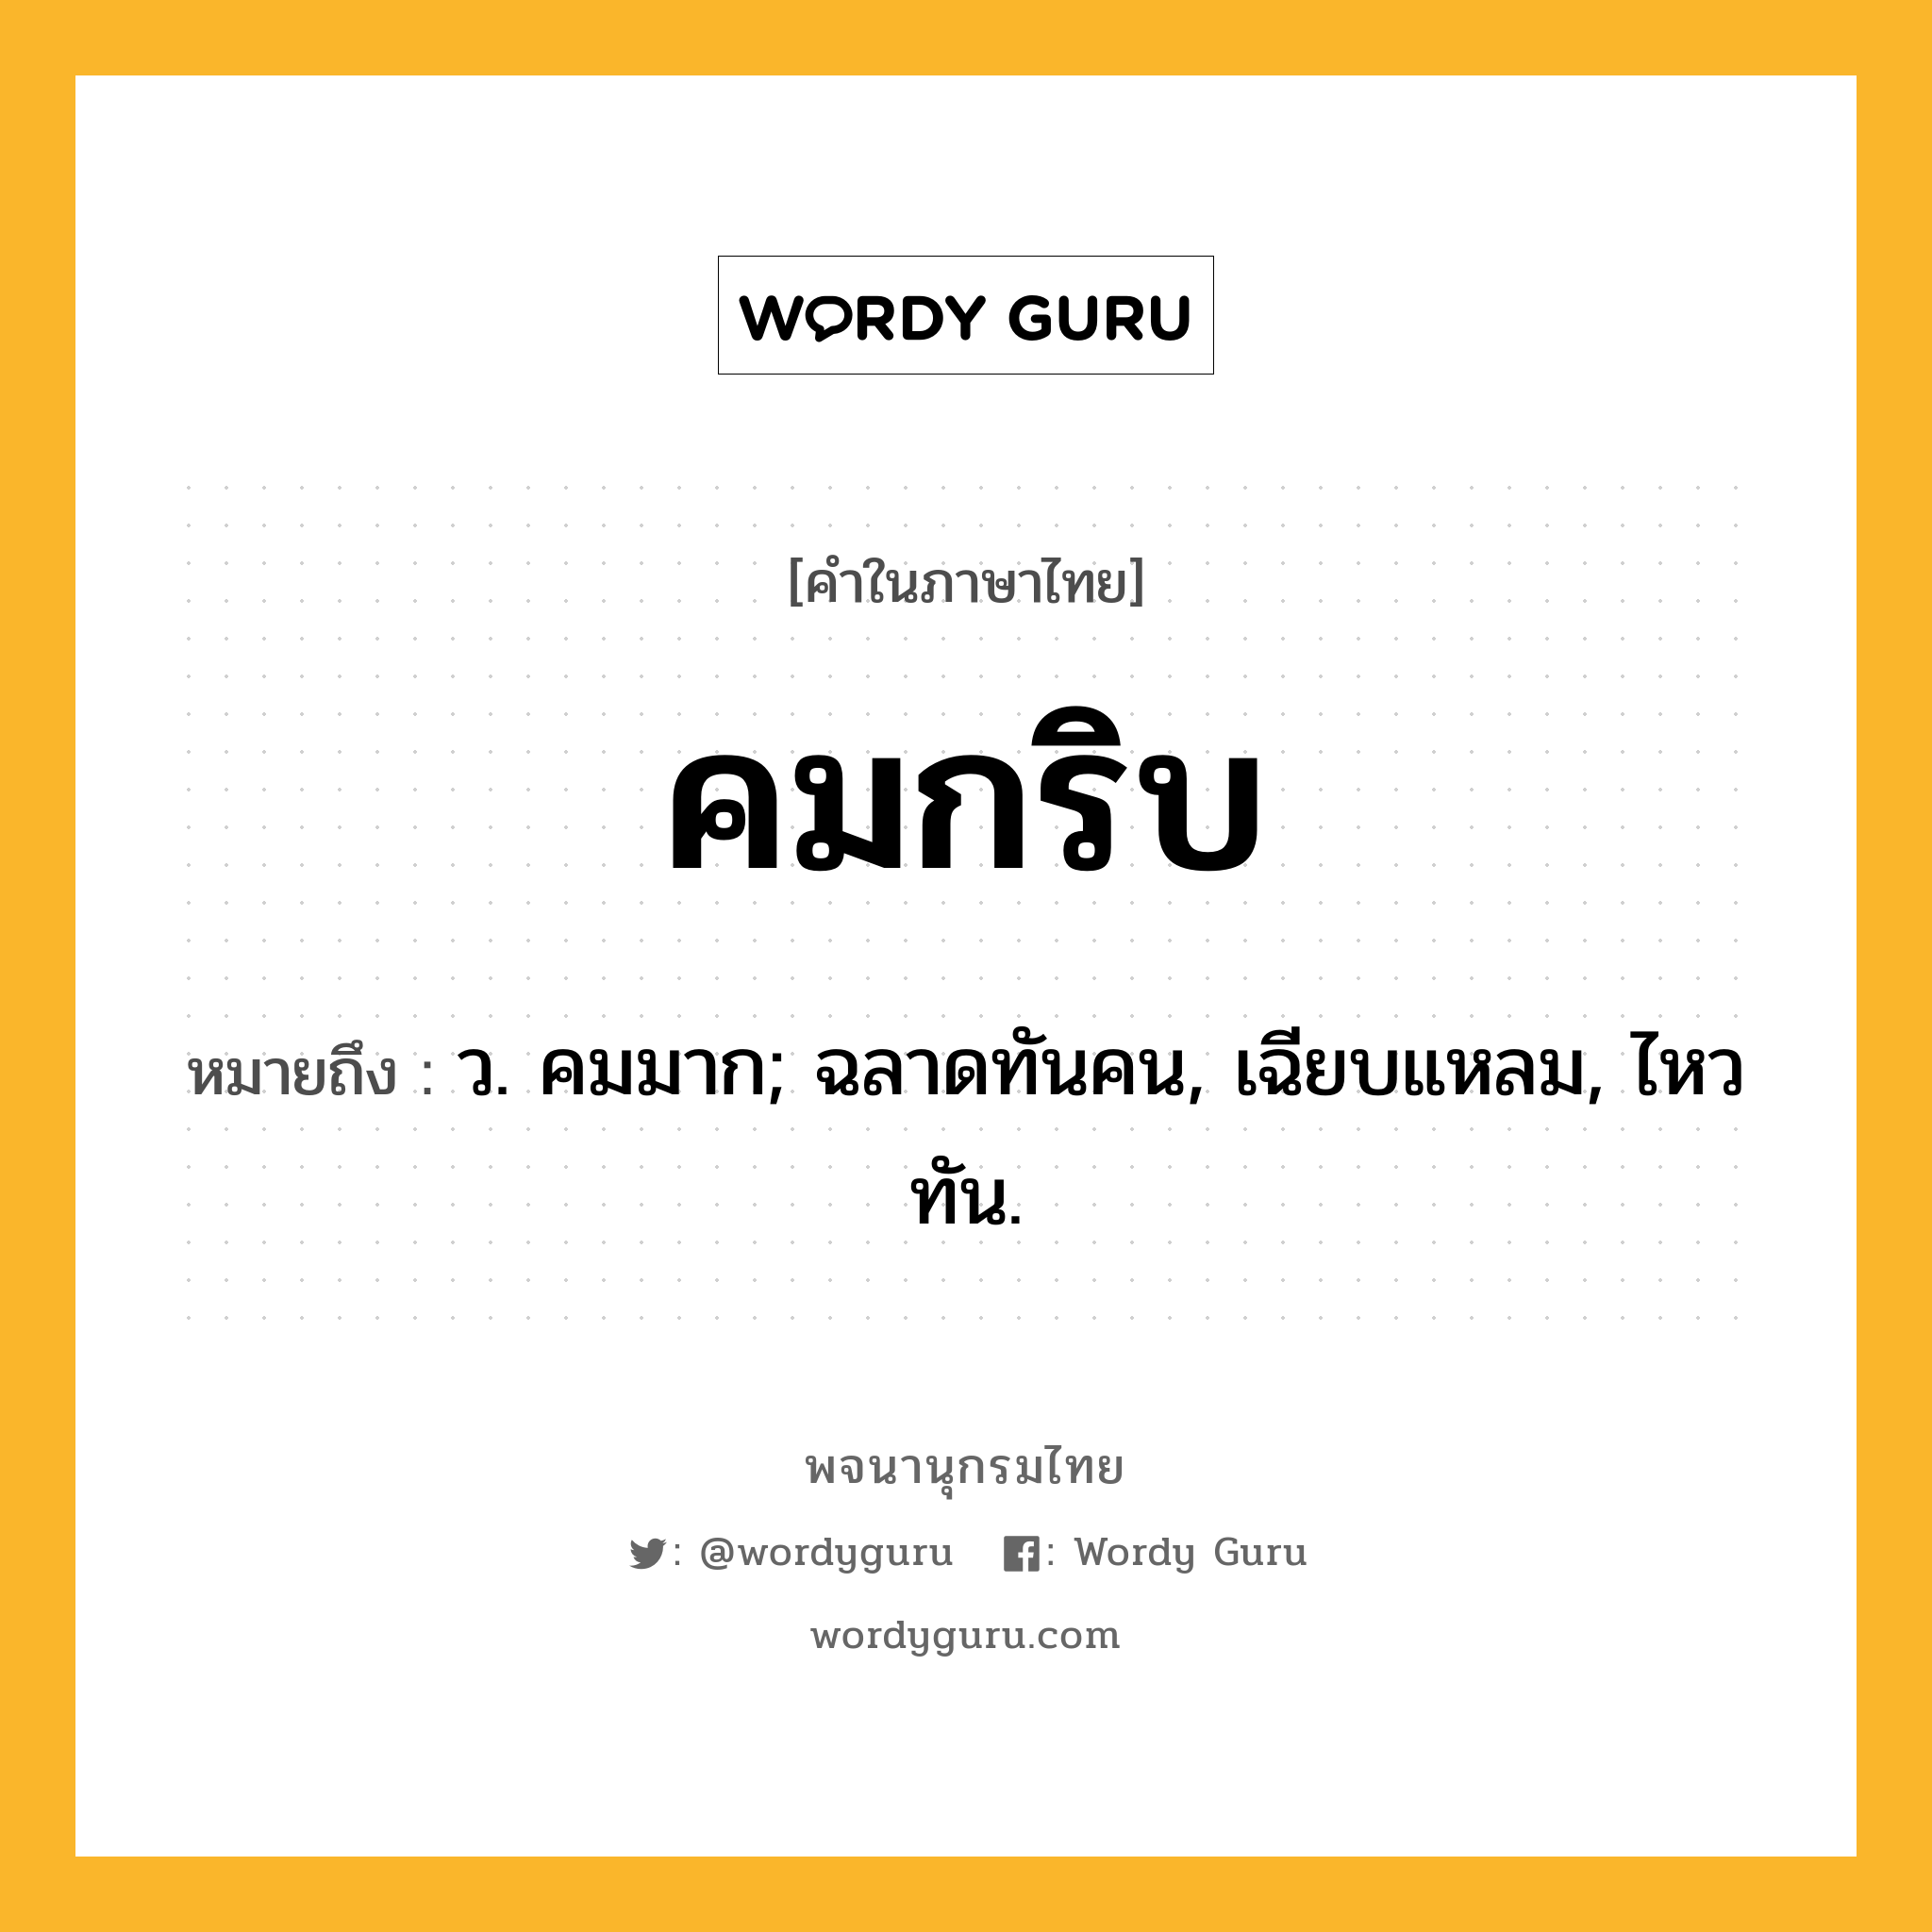 คมกริบ หมายถึงอะไร?, คำในภาษาไทย คมกริบ หมายถึง ว. คมมาก; ฉลาดทันคน, เฉียบแหลม, ไหวทัน.